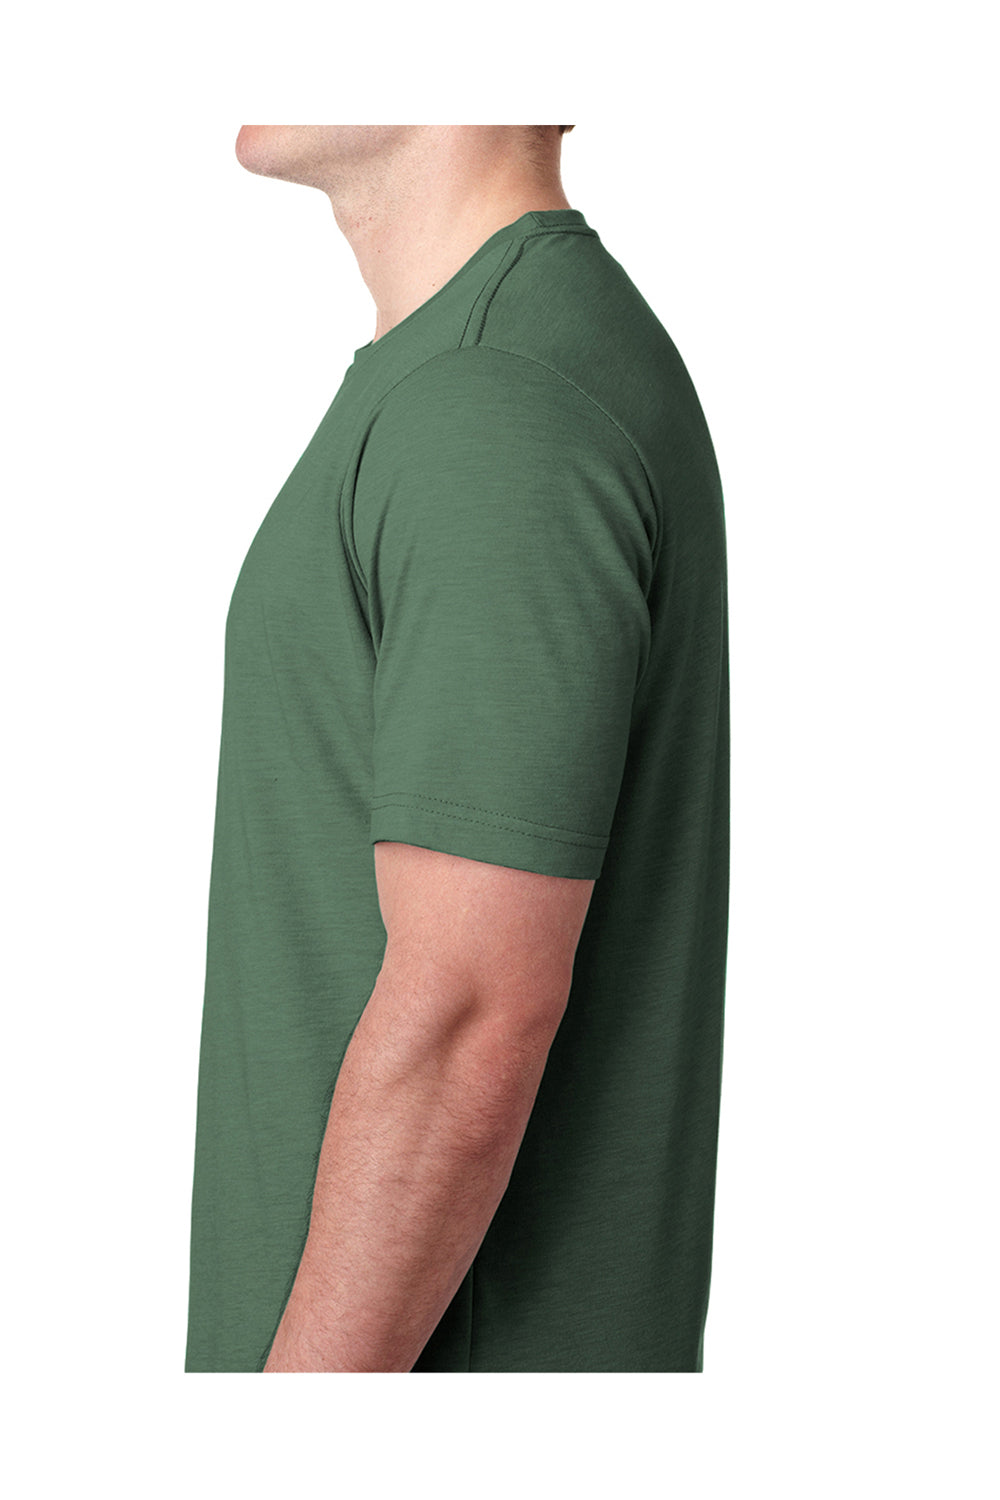 Next Level 6200 Mens Jersey Short Sleeve Crewneck T-Shirt Pine Green Side